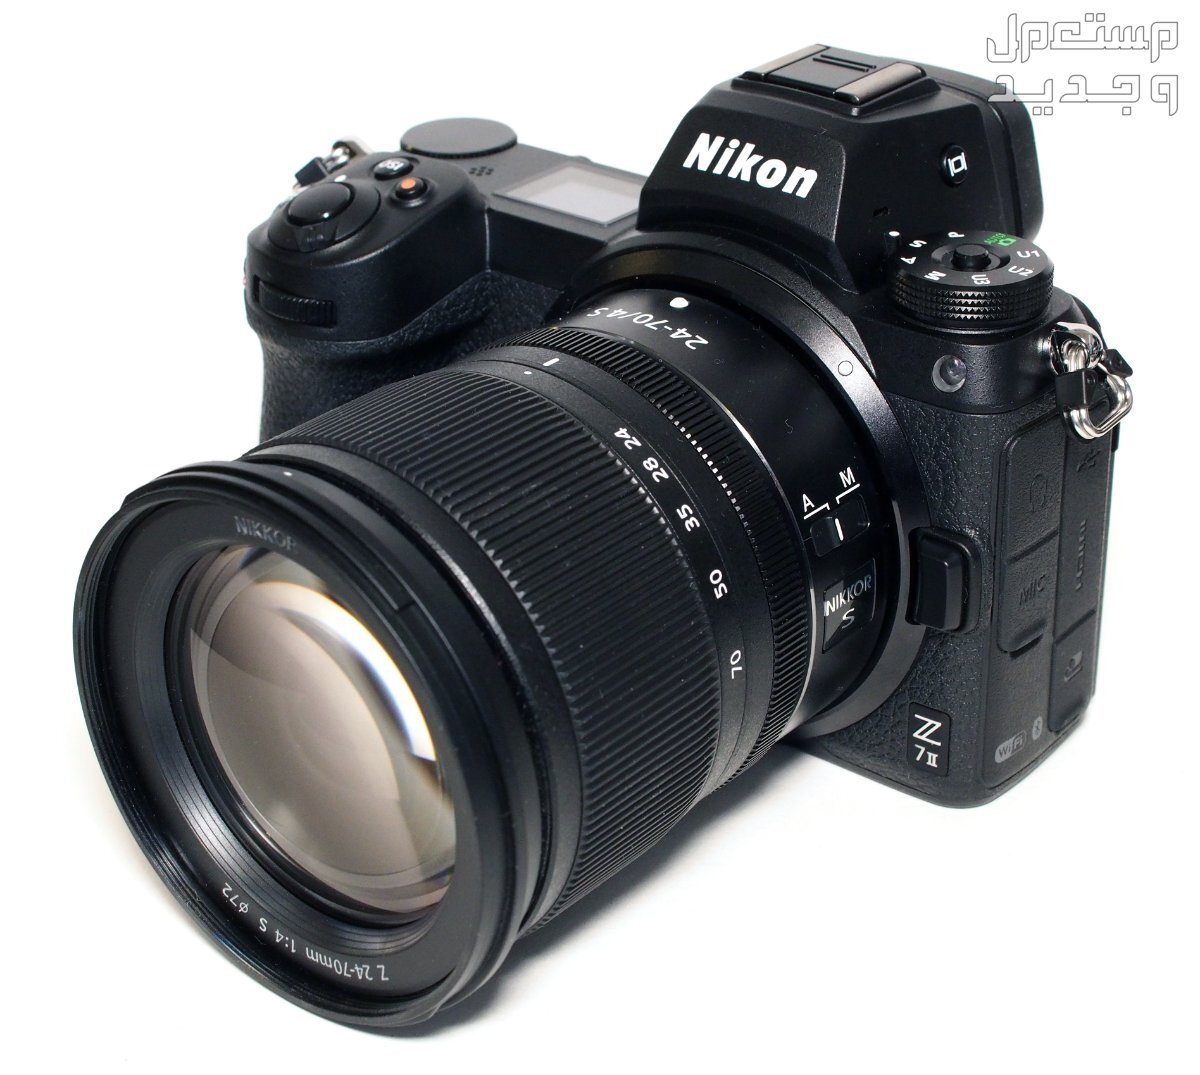 بالصور .. أفضل أنواع الكاميرات ومميزاتها وأسعارها في مصر كاميرا Nikon Z7